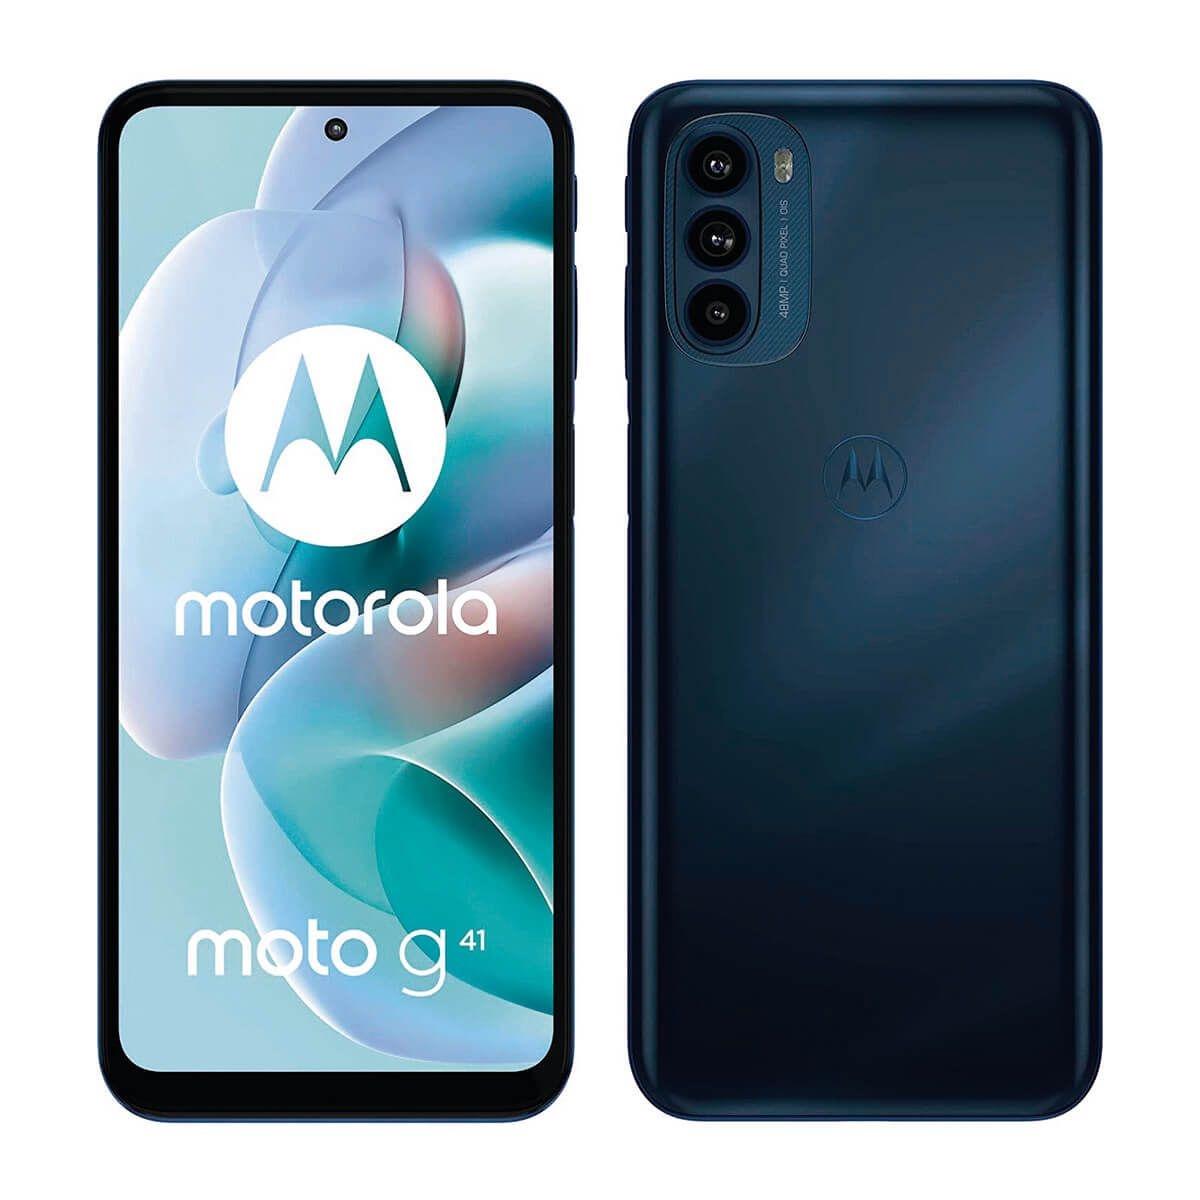 Motorola Moto Dual SIM Meteorite Black and 6GB RAM - XT2167-2 (0840023225314) | Movertix Mobile Phones Shop